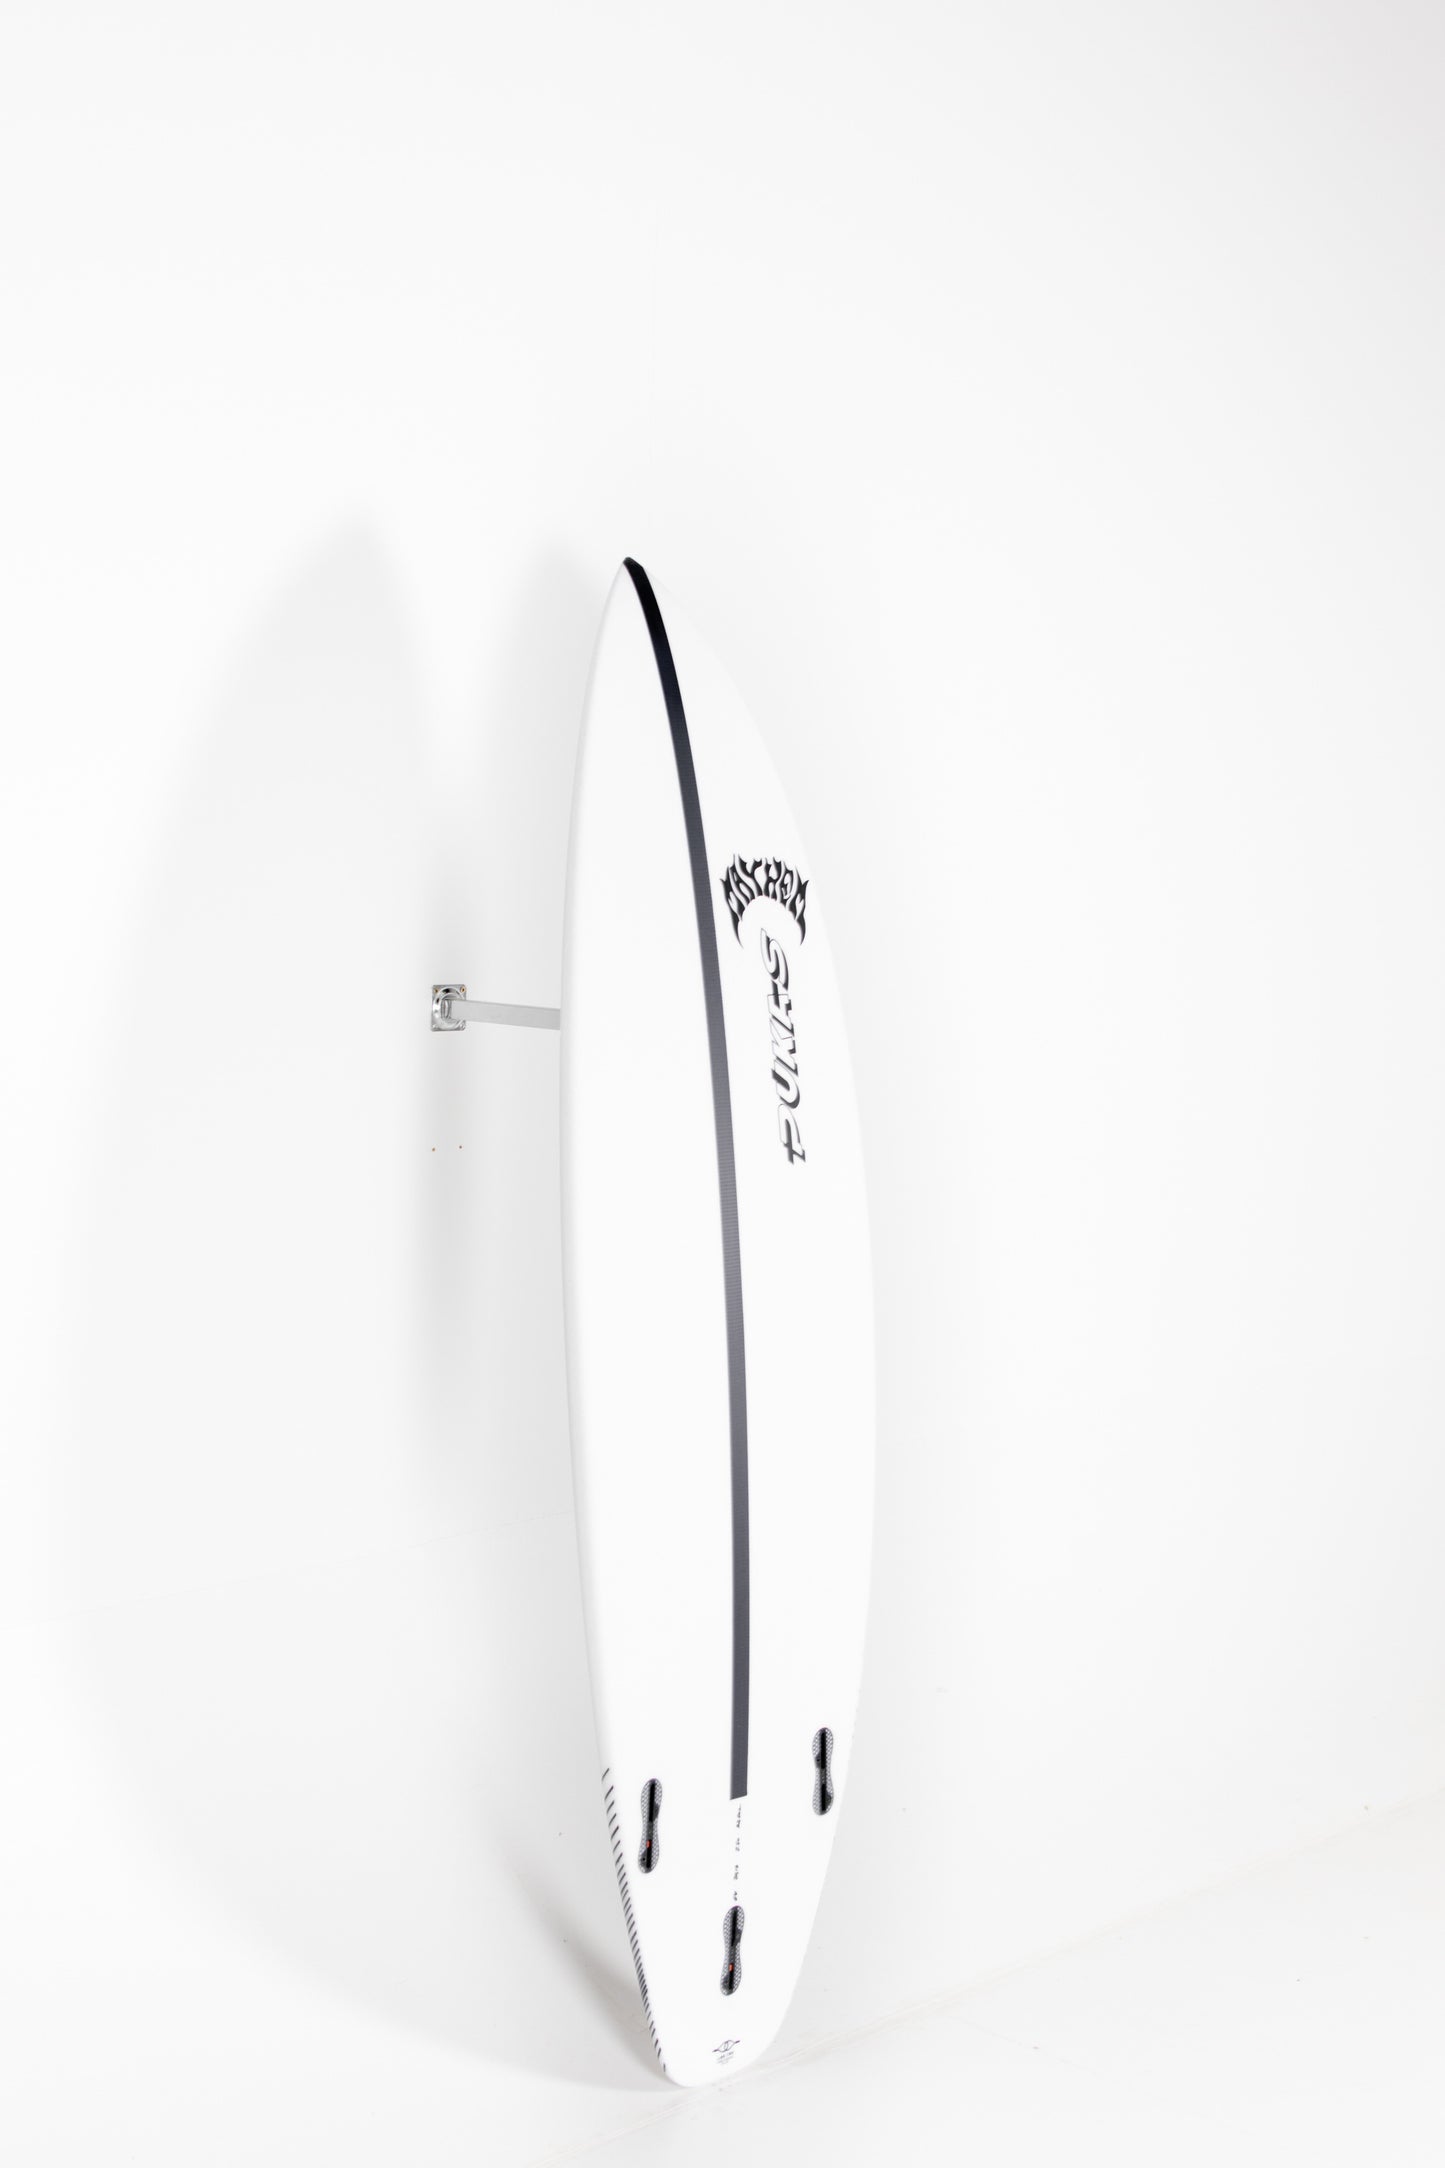 
                  
                    Pukas Surfboard - INN·CA Tech - THE LINK 2  by Matt Biolos - 6'0” x 20,13" x 2.5 x 32.5L
                  
                